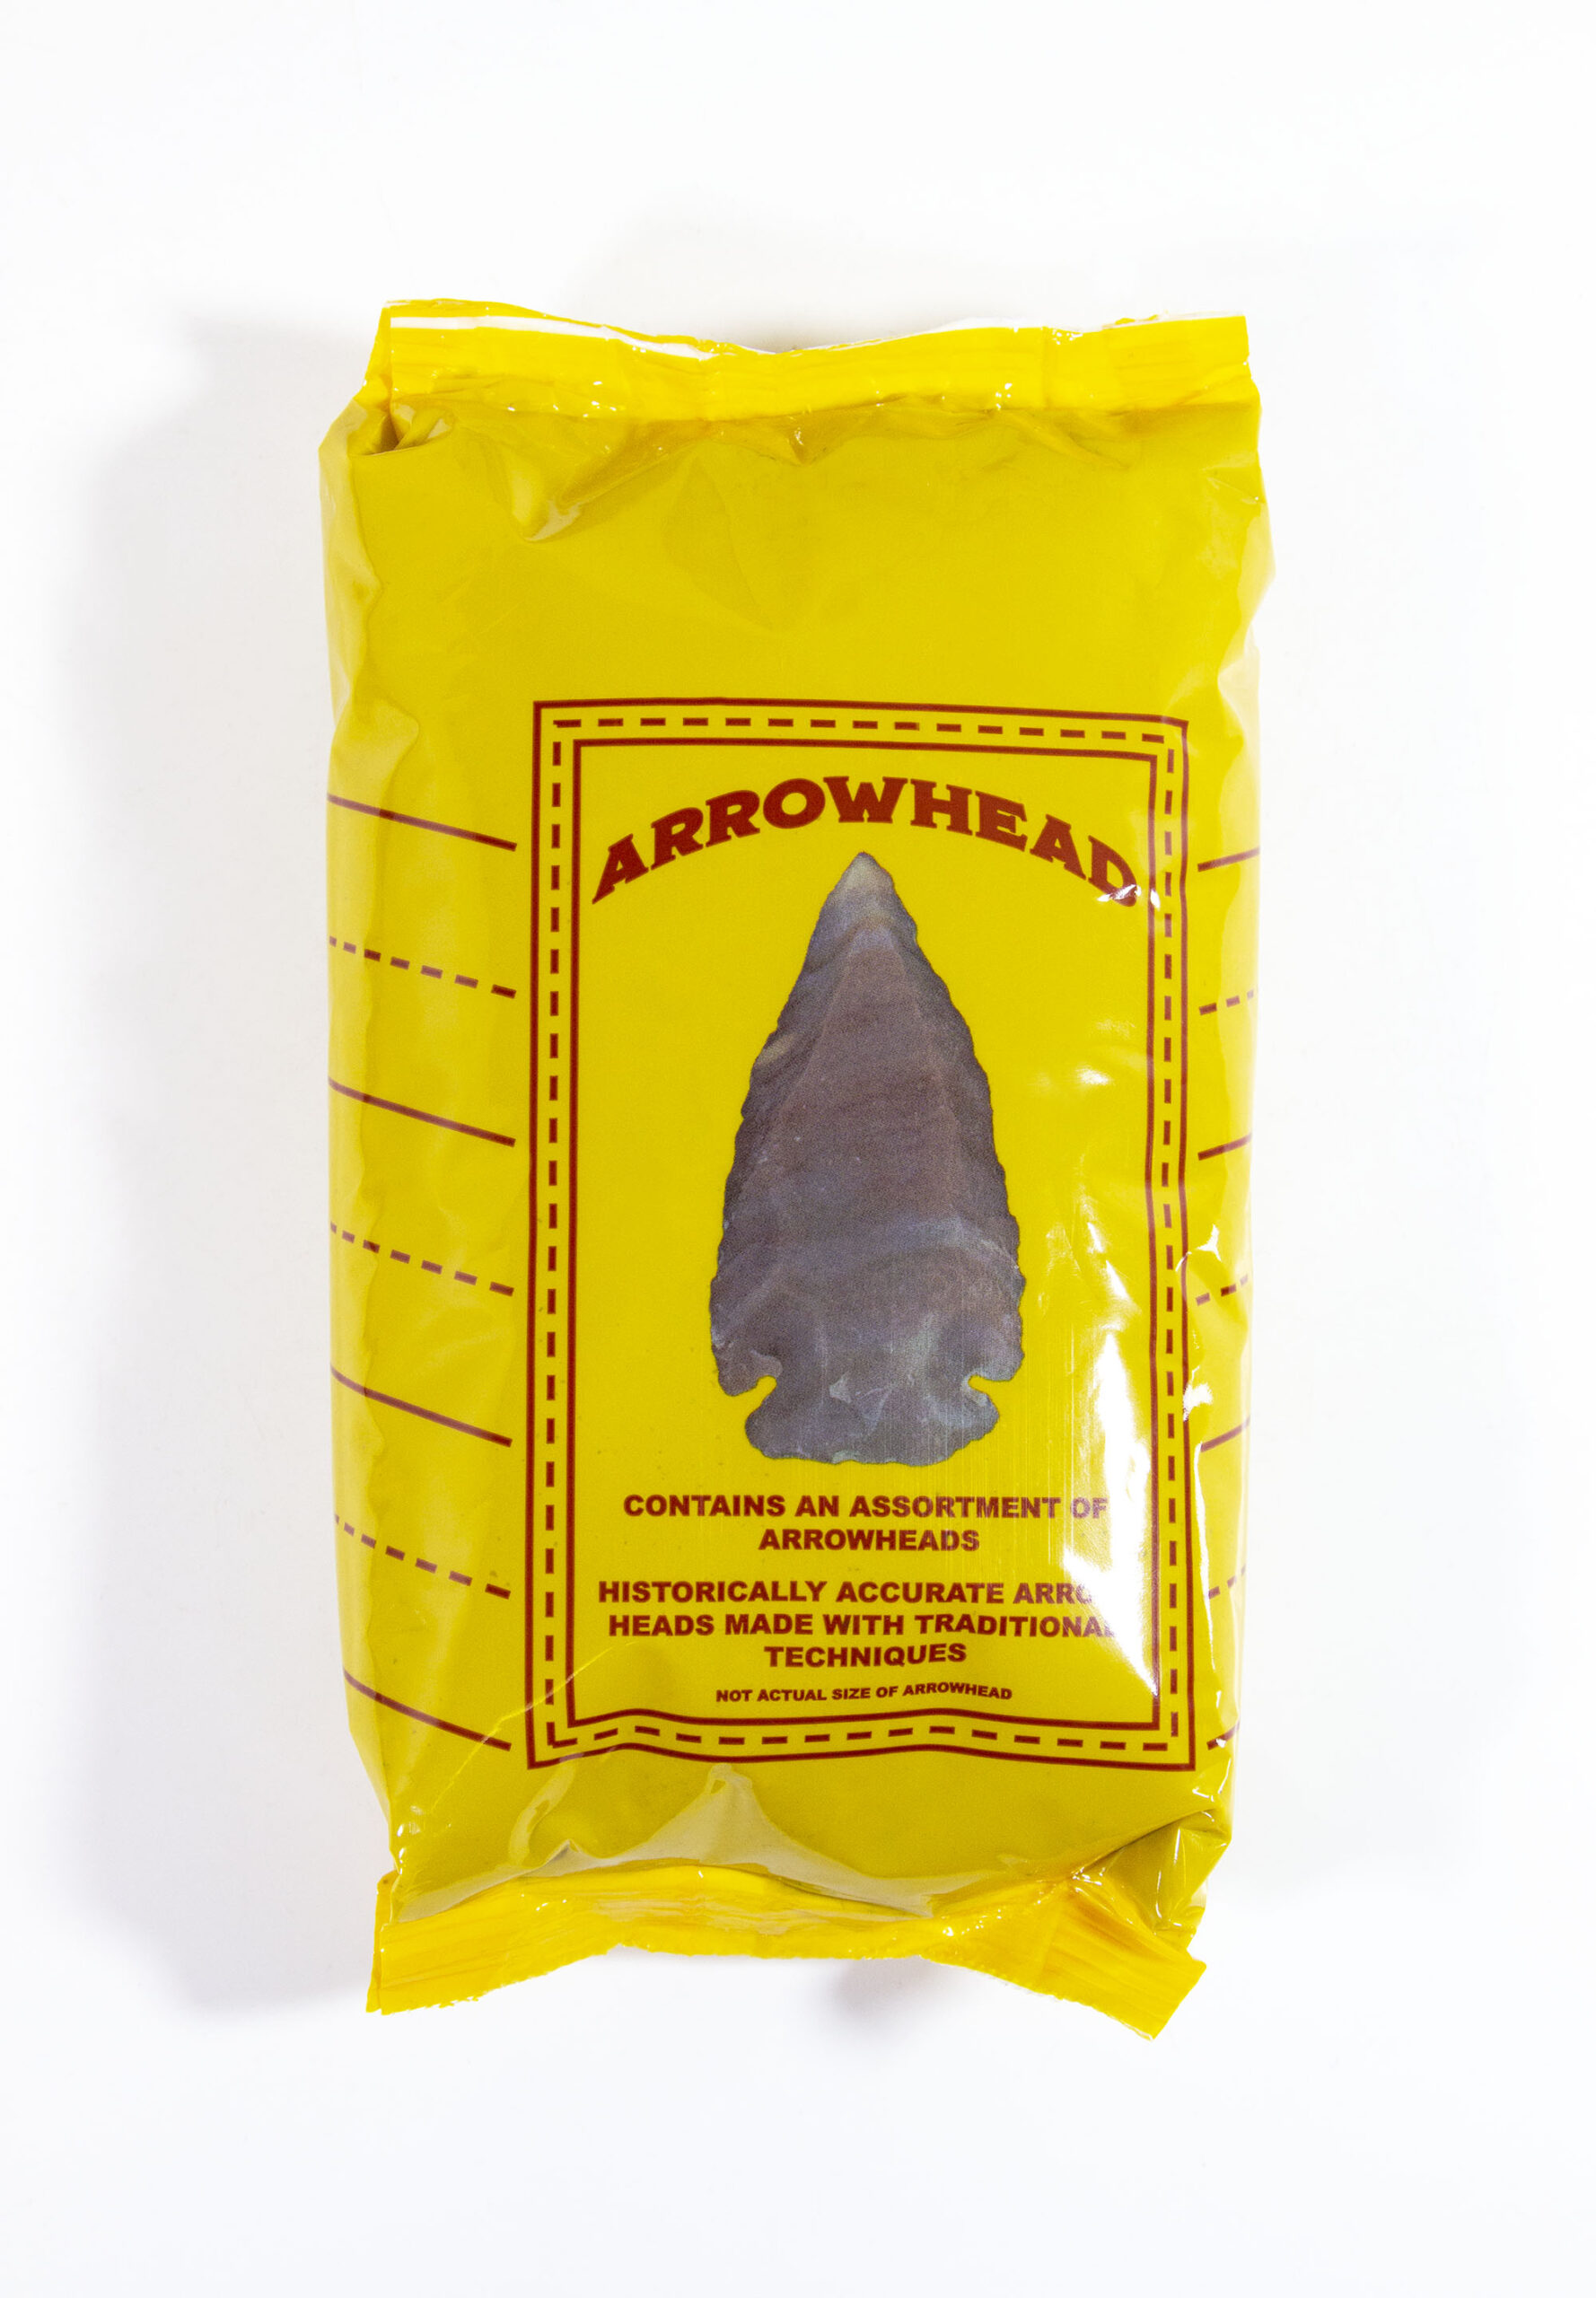 Arrowhead Bag